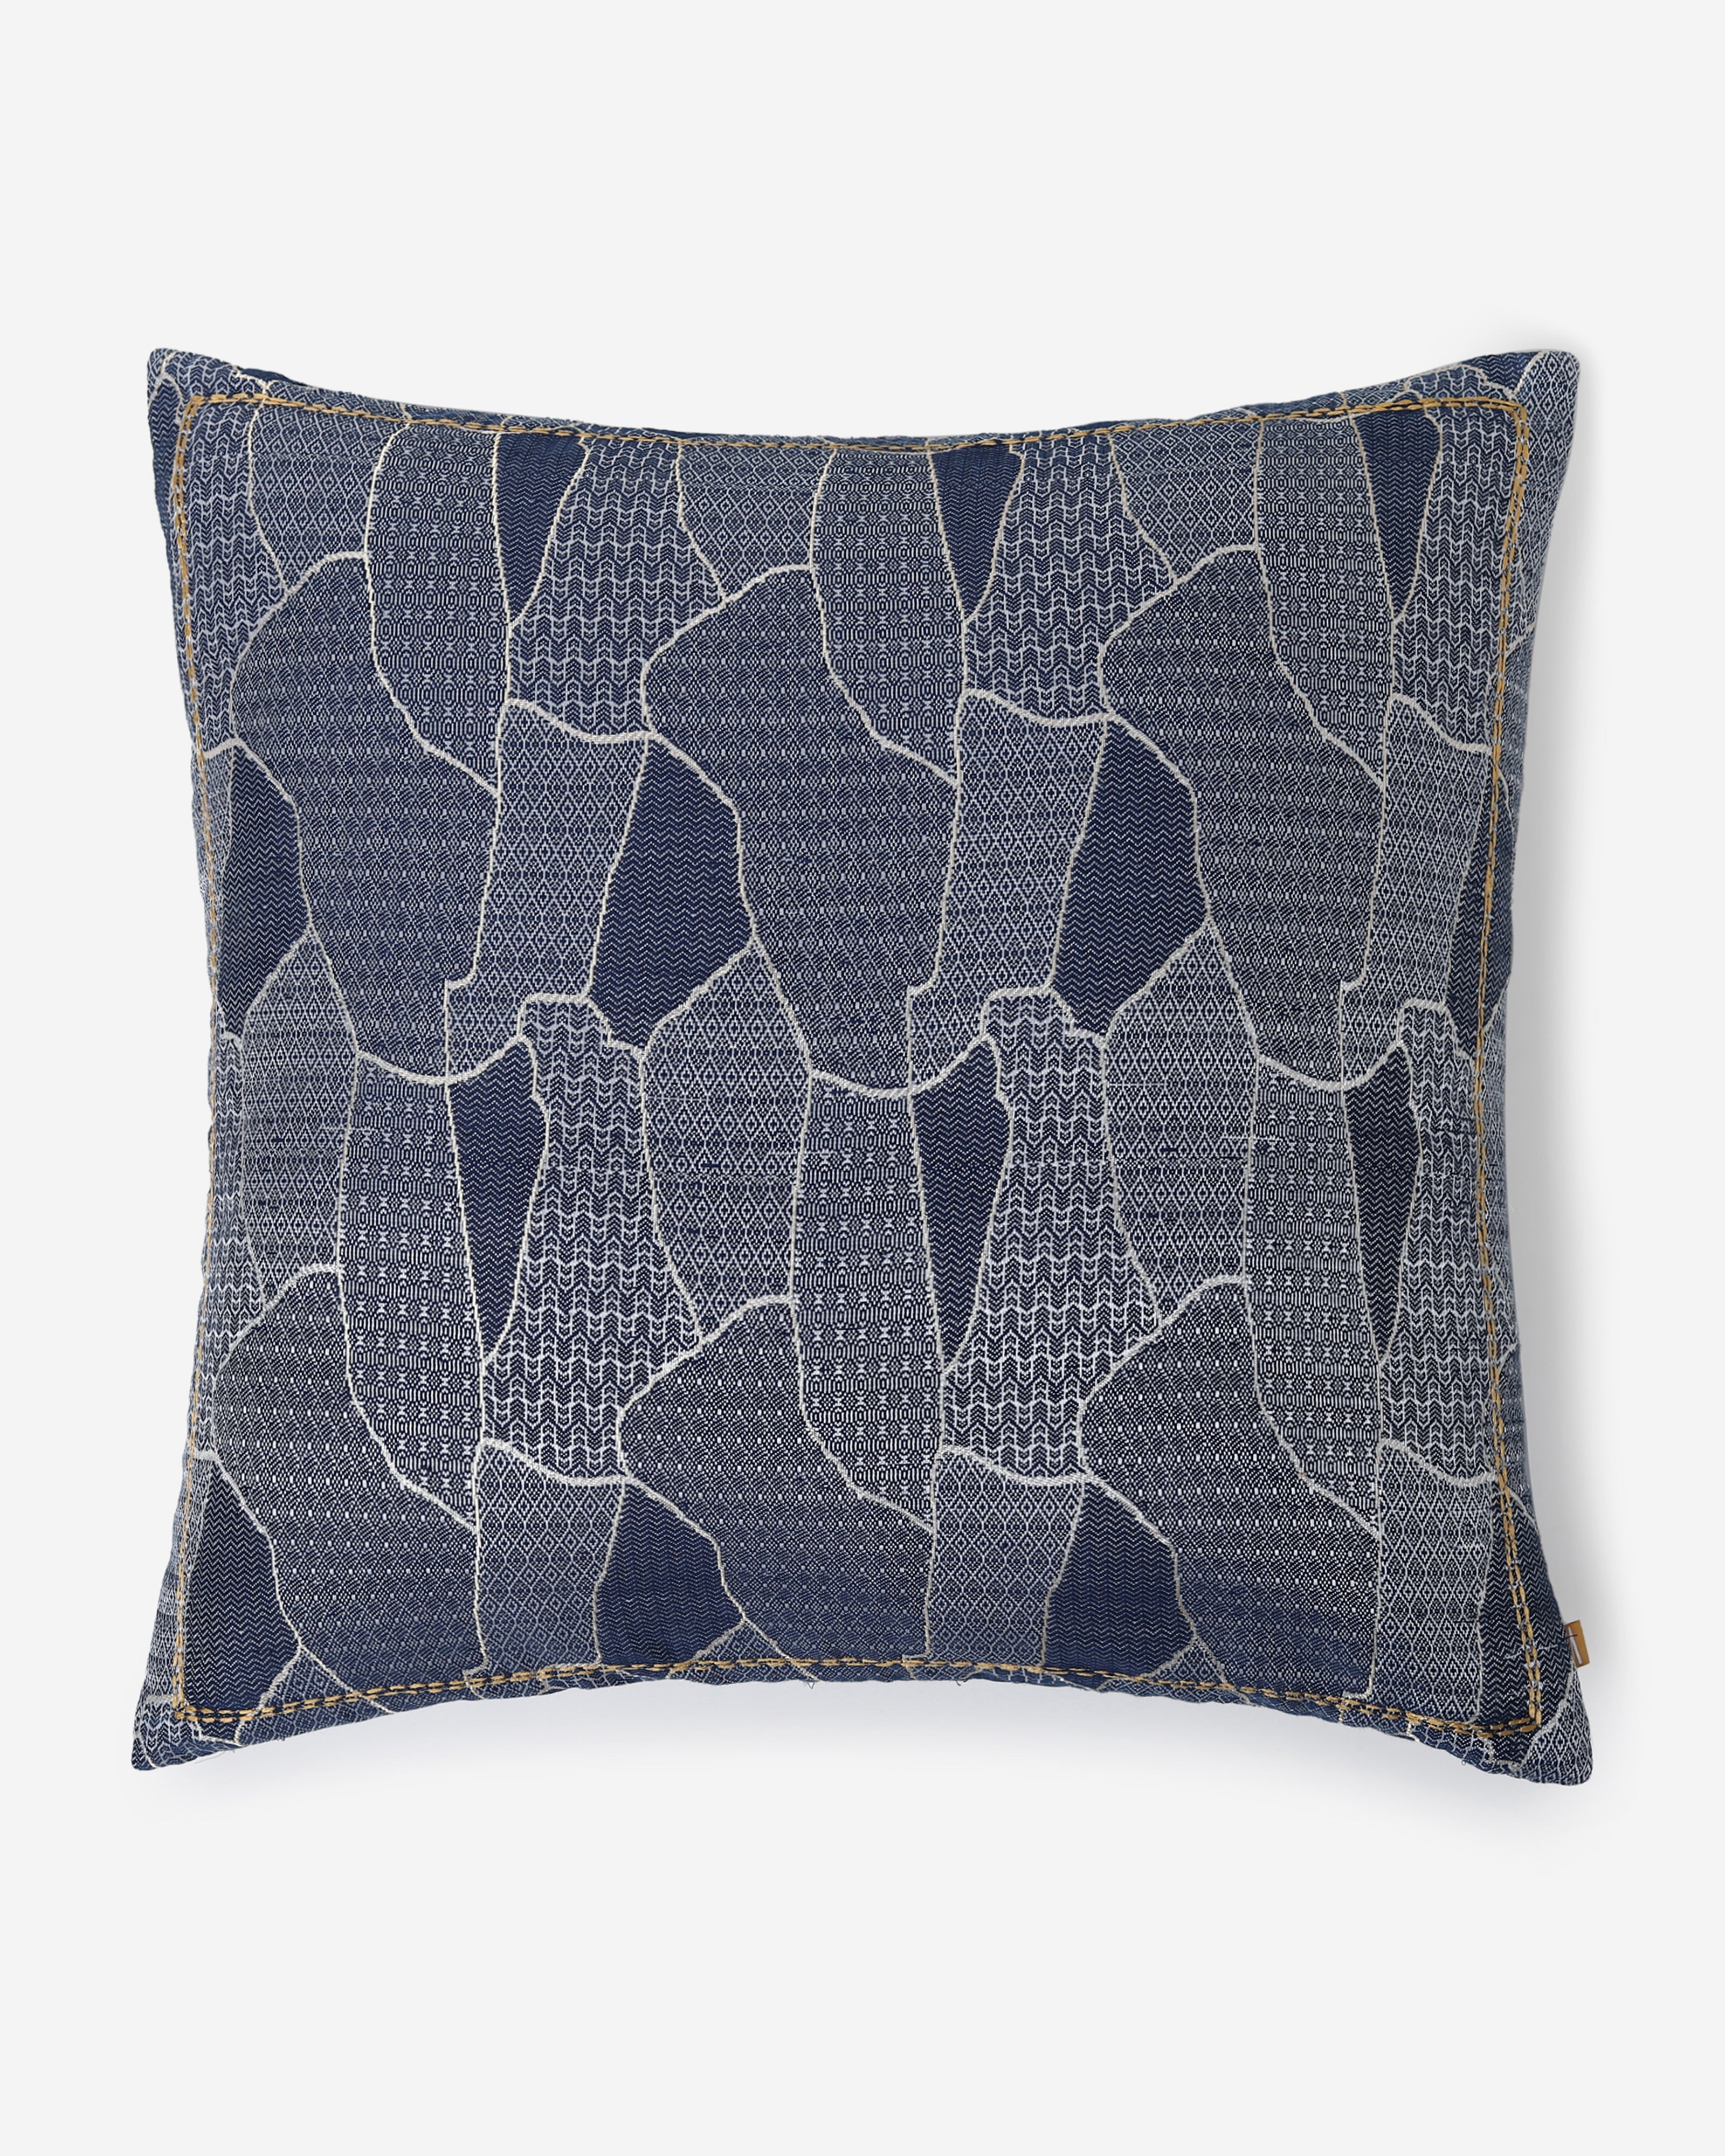 Kitusugi Satin Brocade Silk Cotton Cushion Cover - Dark Blue